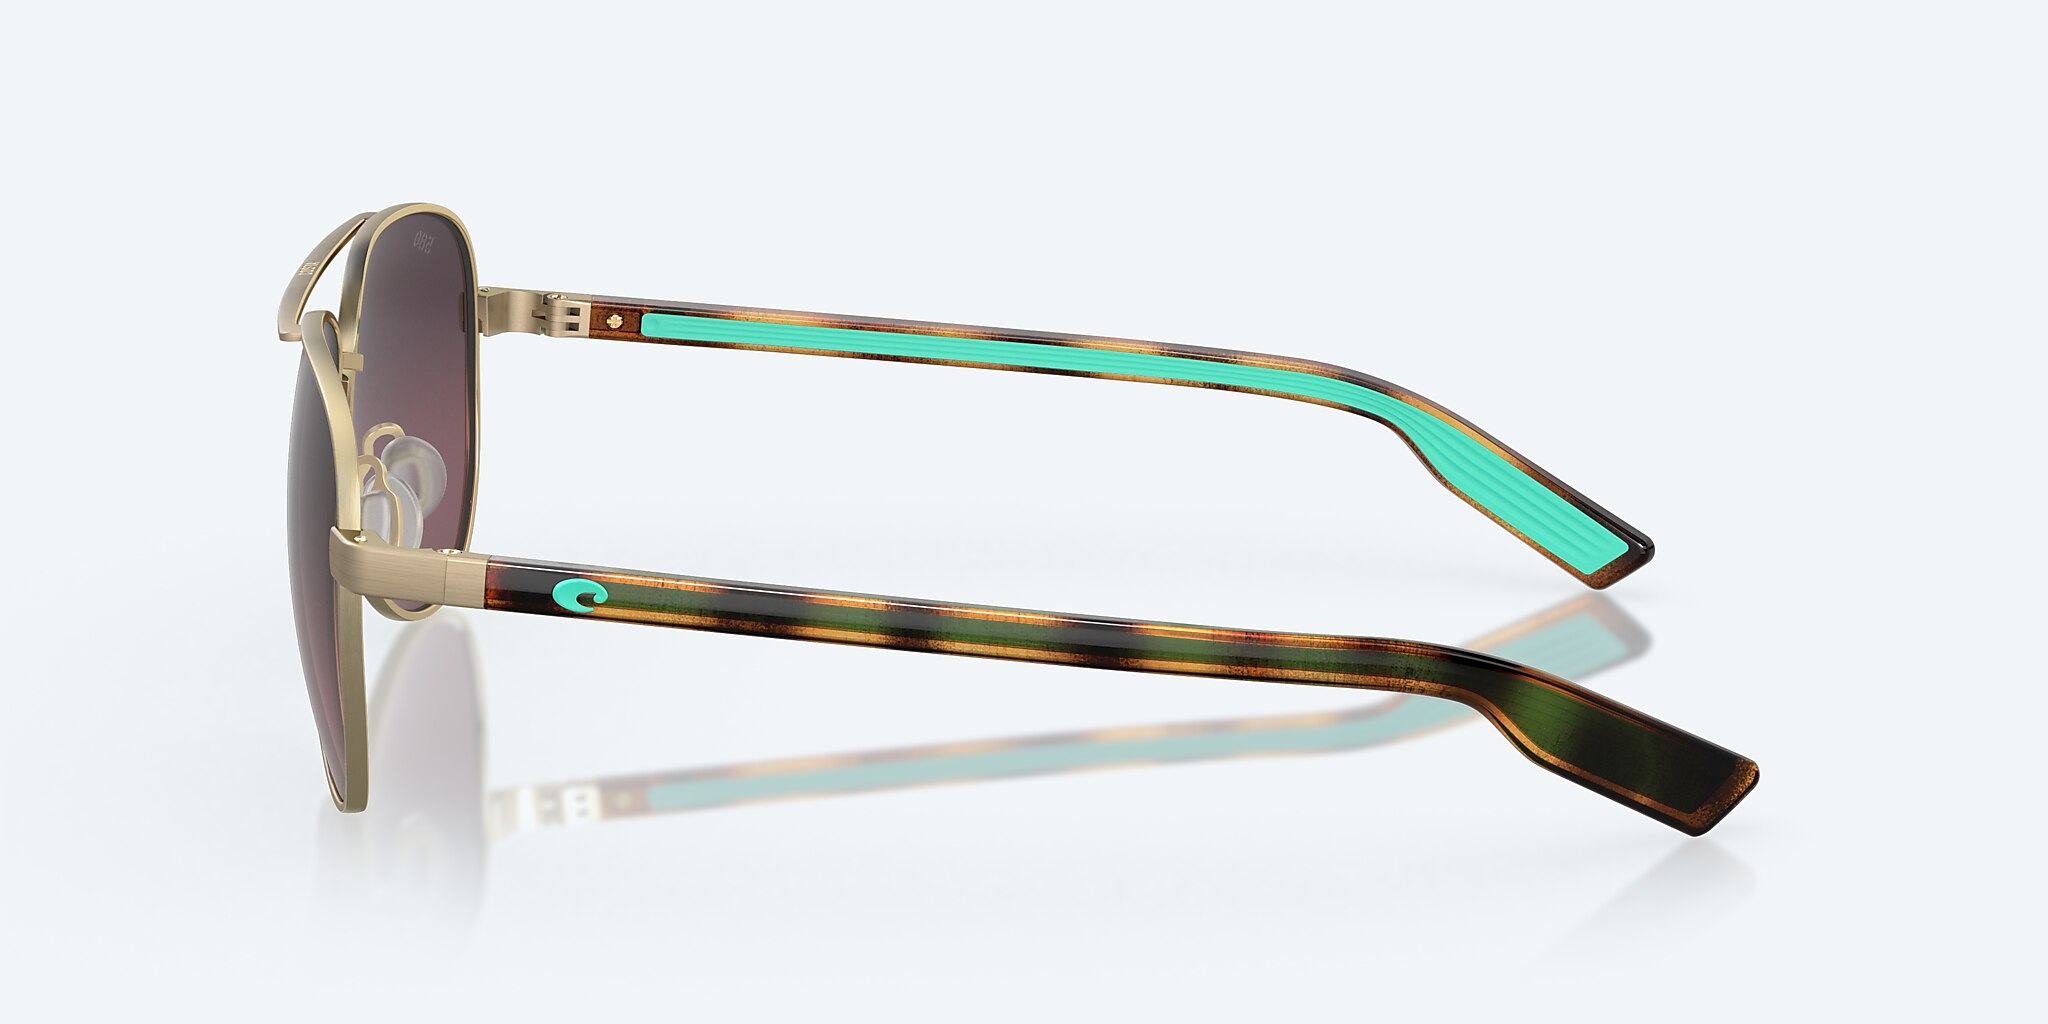 Peli Polarized Sunglasses in Rose Gradient